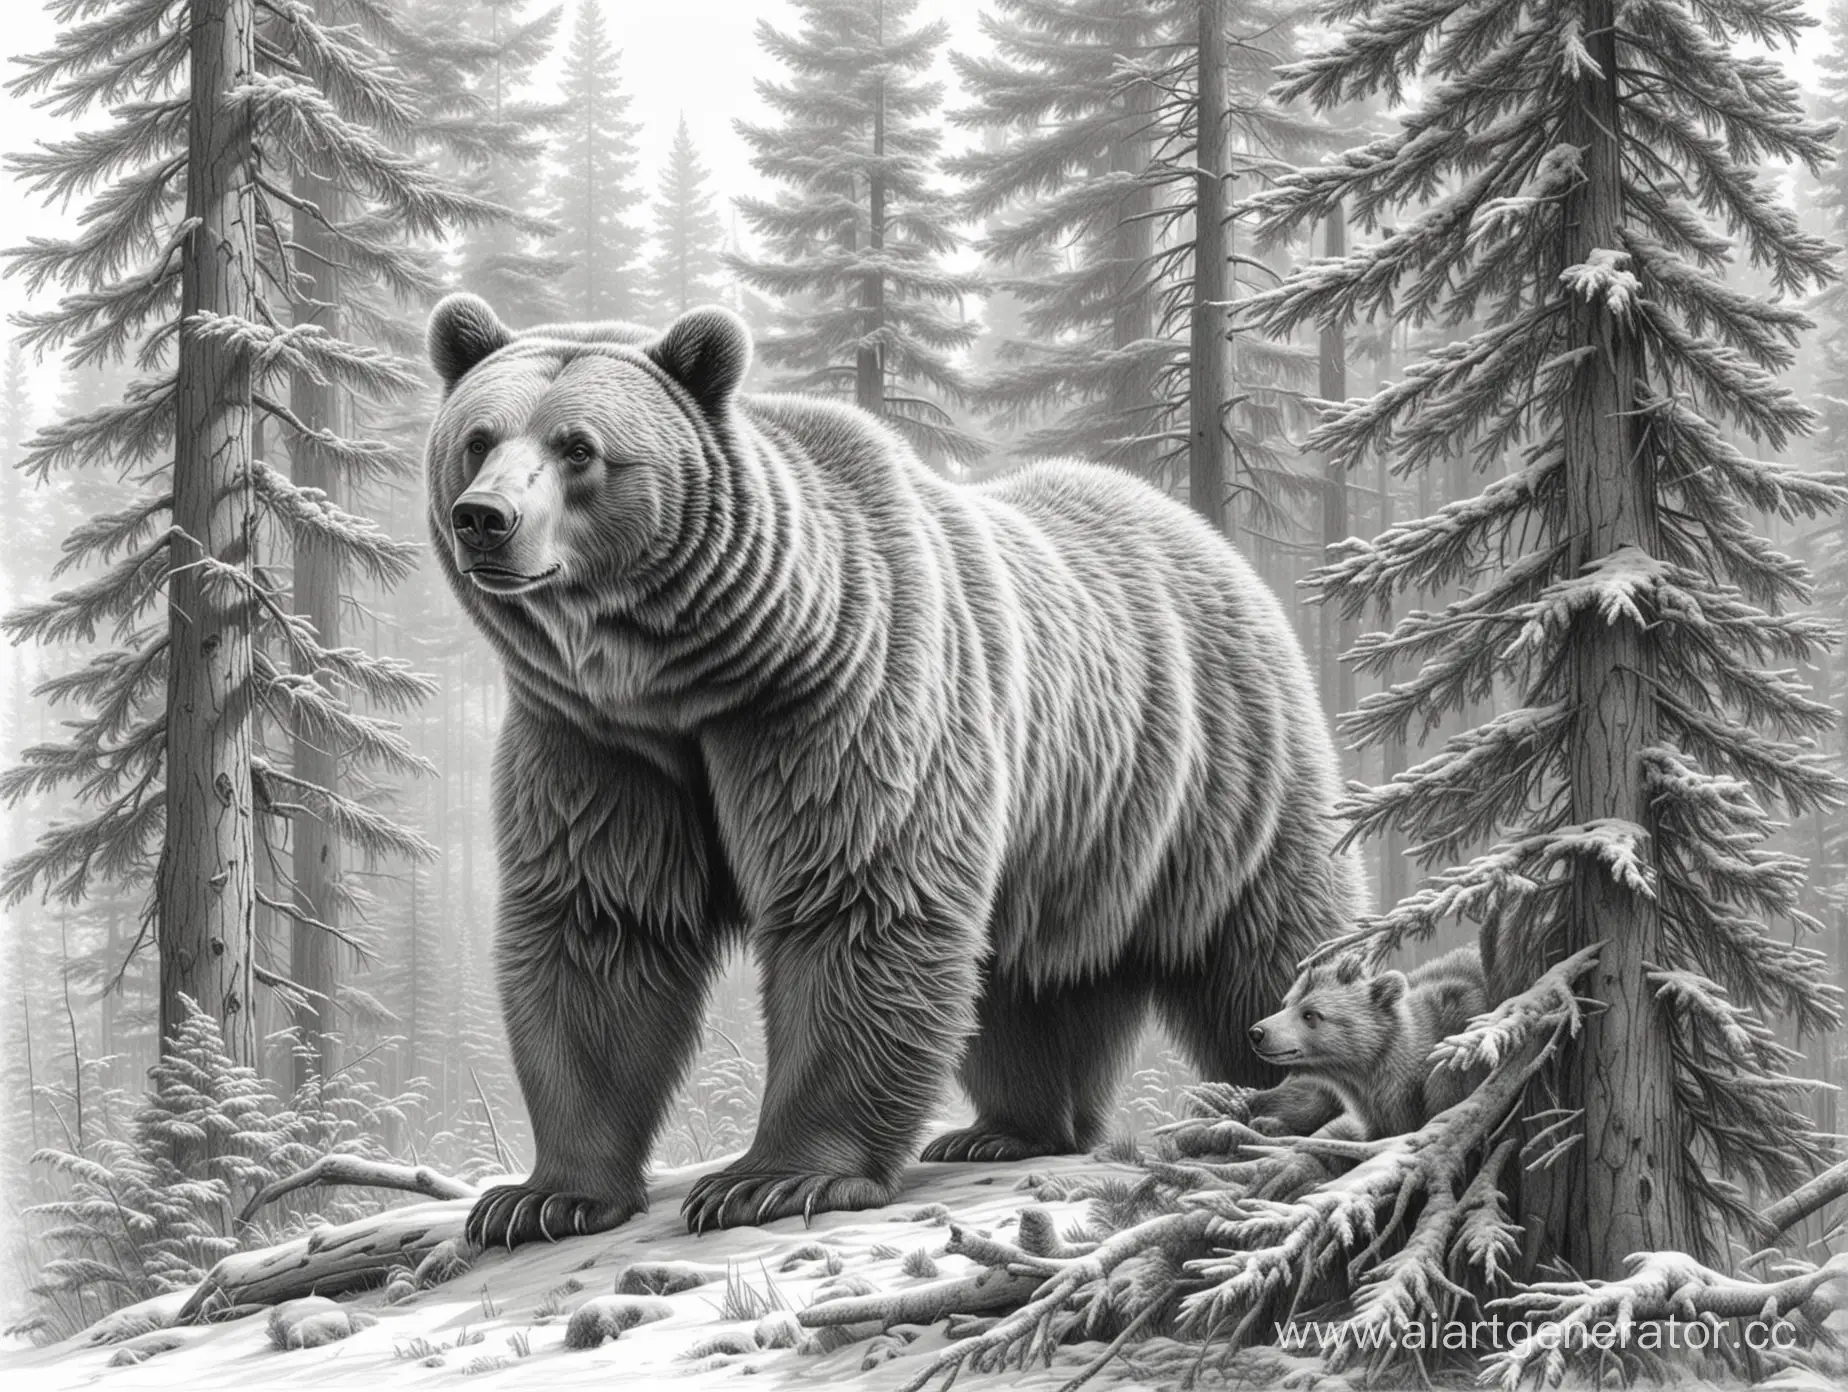 реалистичный рисунок в стиле карандашной графики на белом фоне максимально детализированный медведь с медвежонком  рядом большая детализированная ель во весь рост